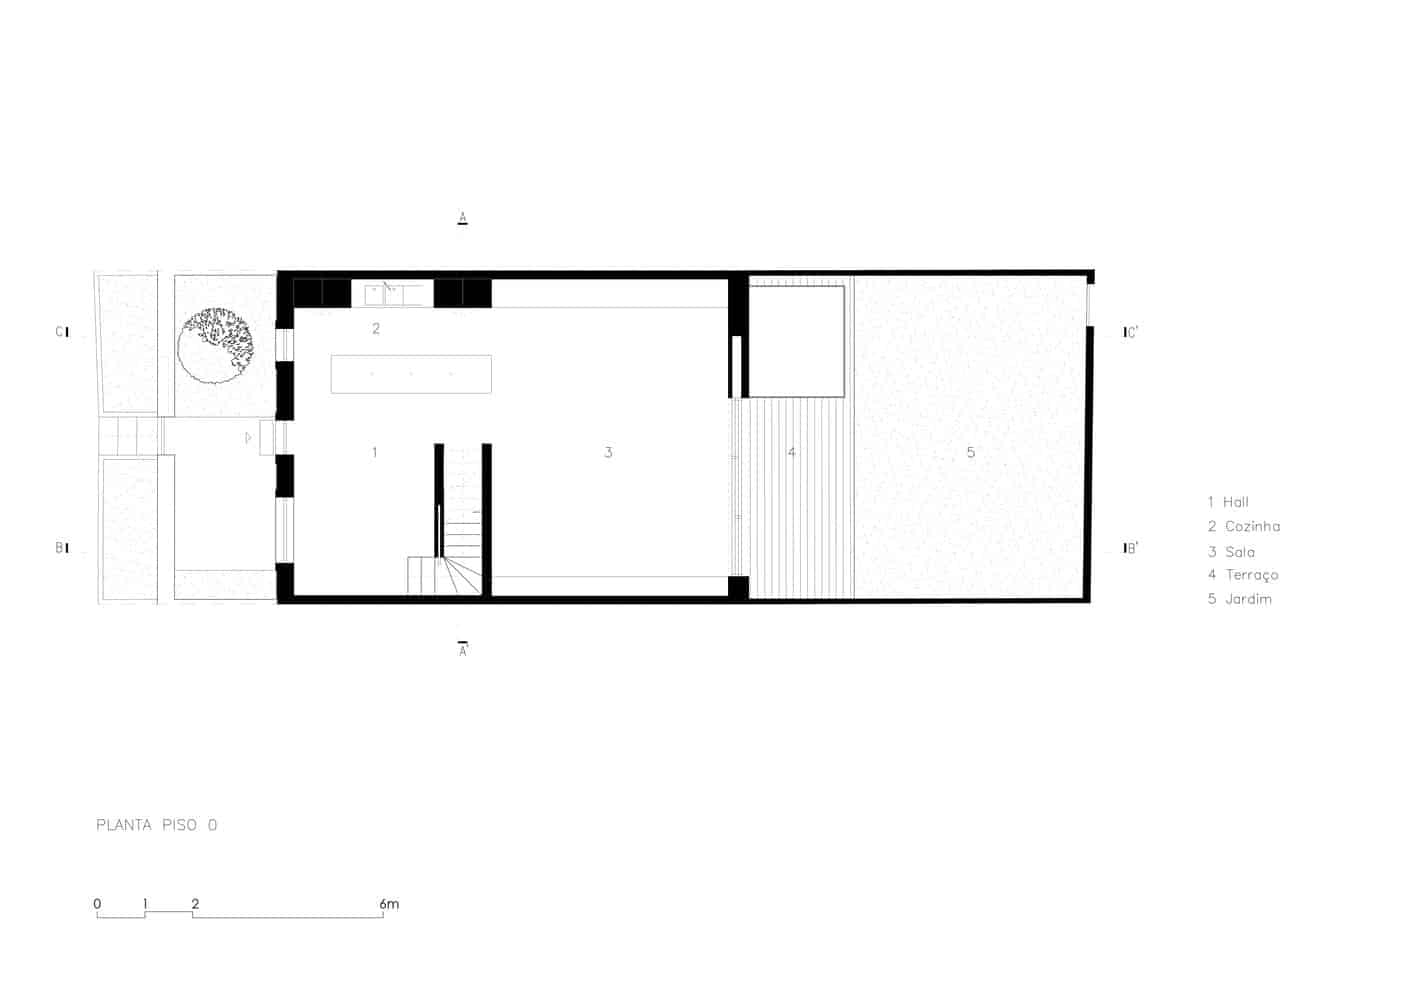 ground floor plan